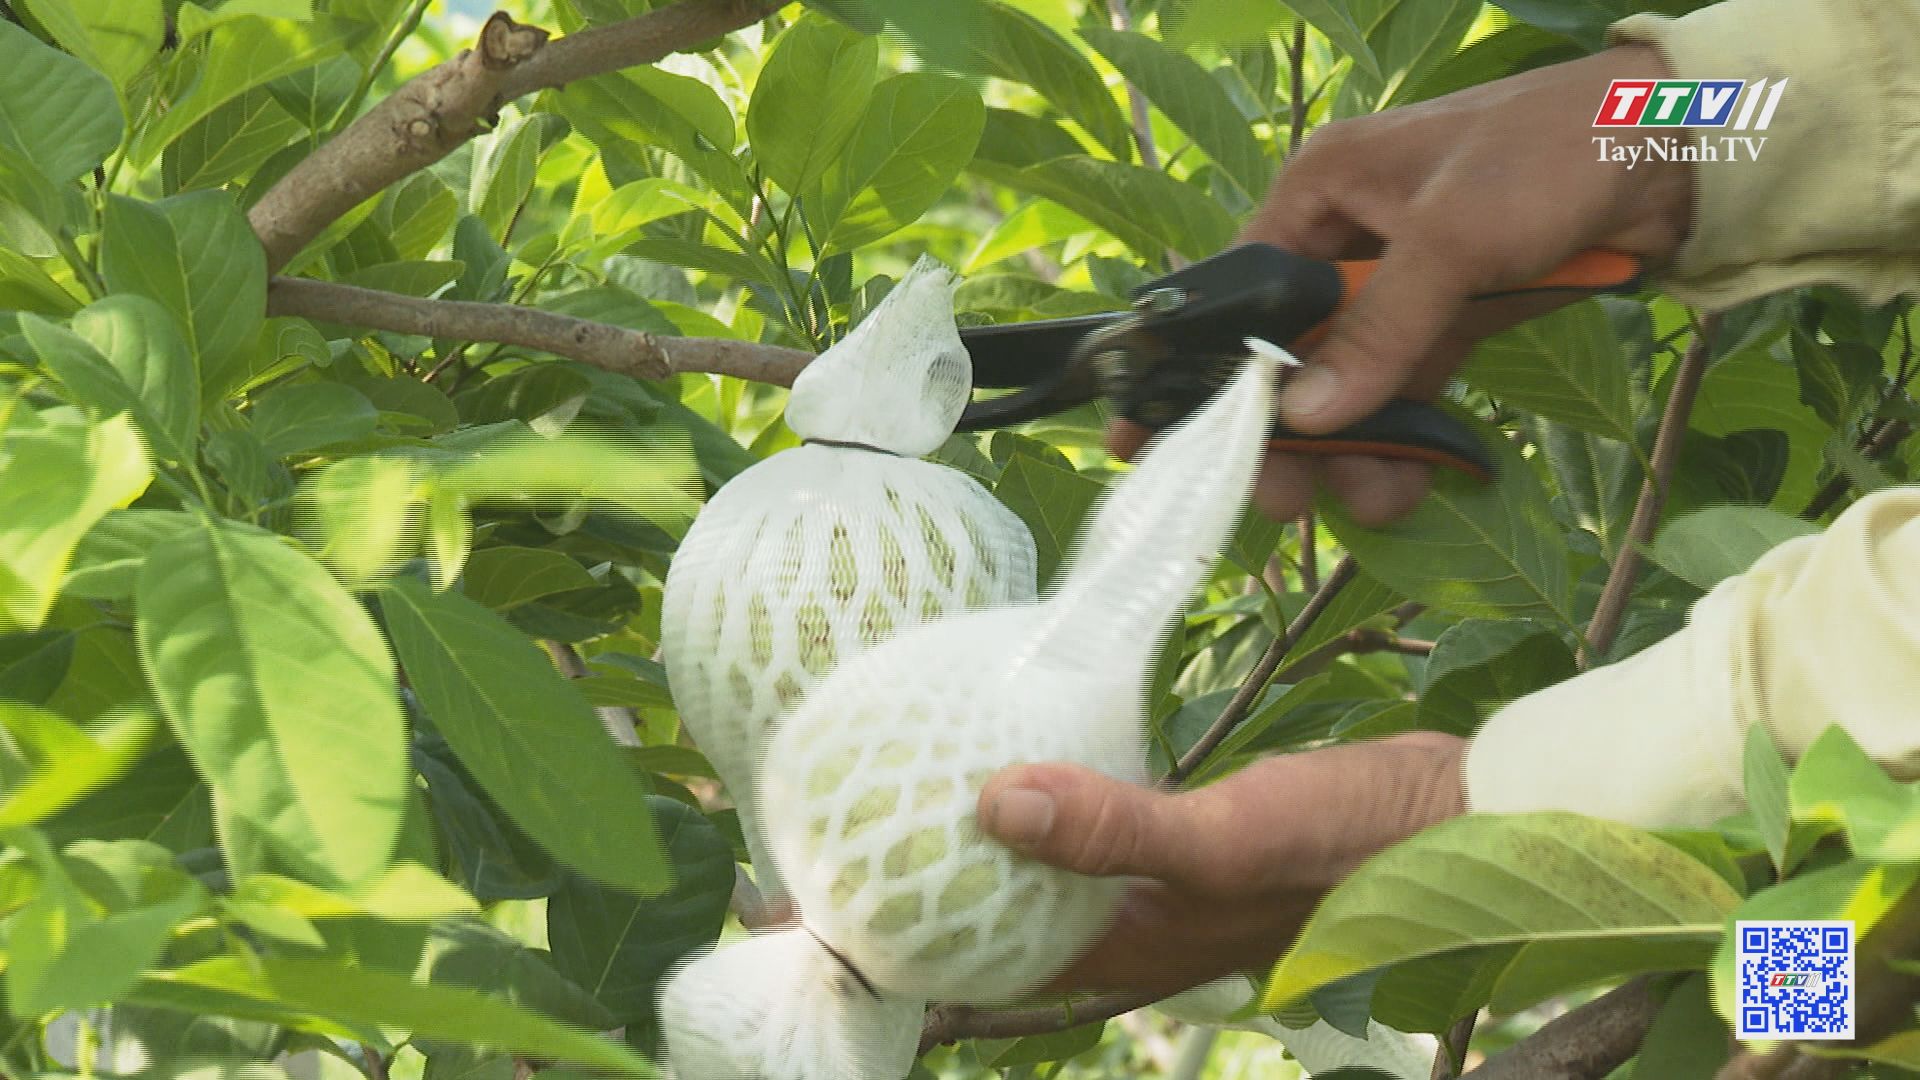 Xây dựng trái mãng cầu Bà Đen trở thành sản phẩm OCOP | TÂY NINH XÂY DỰNG NÔNG THÔN MỚI | TayNinhTV 